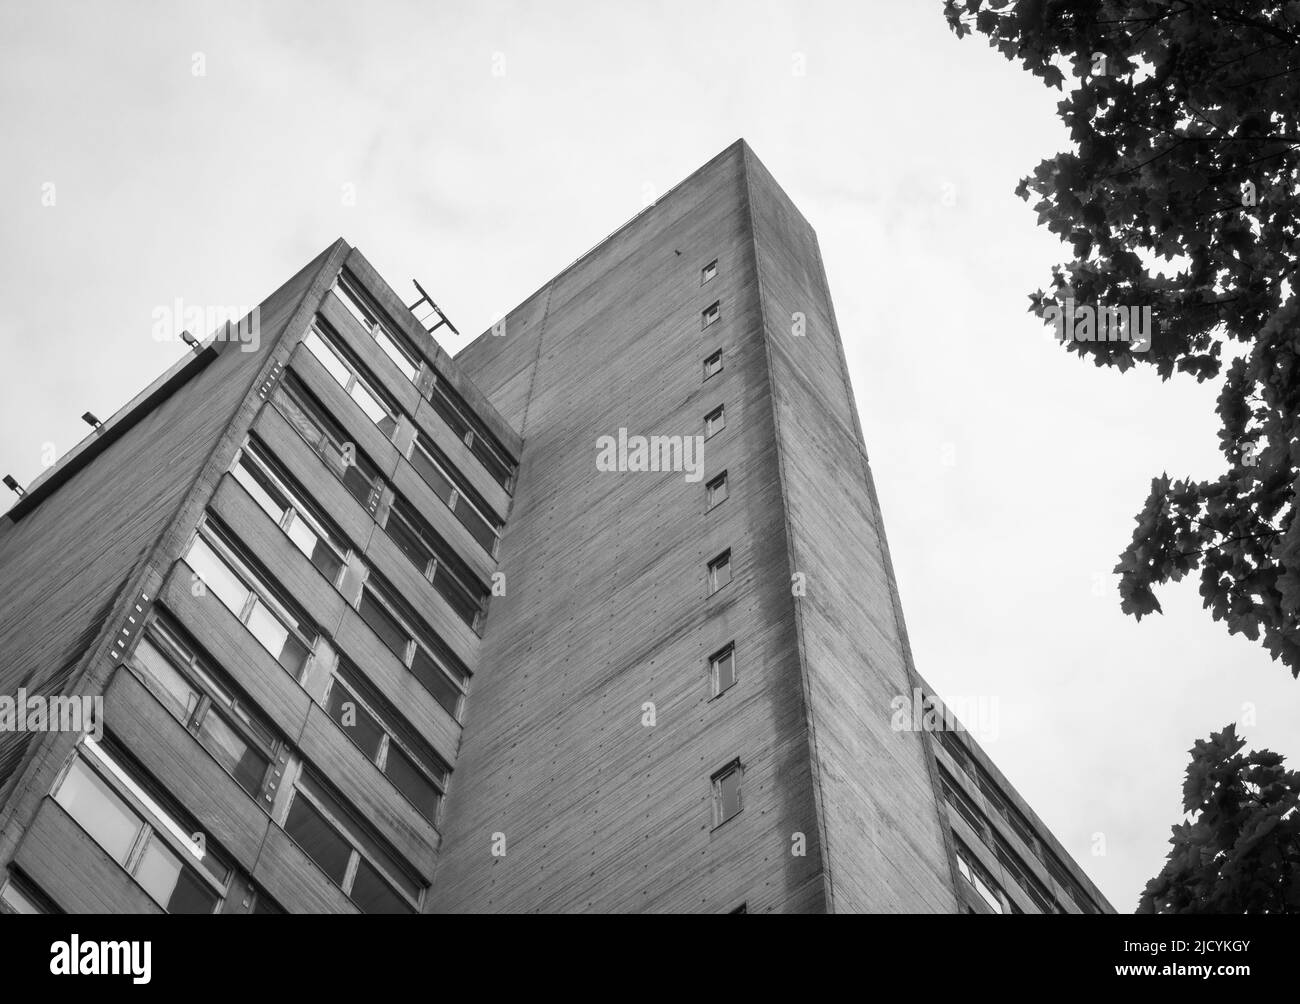 Ein Blick auf das Math and Social Sciences Building, Manchester, Großbritannien, ein Beispiel für den Brutalistischen Architekturstil. Stockfoto